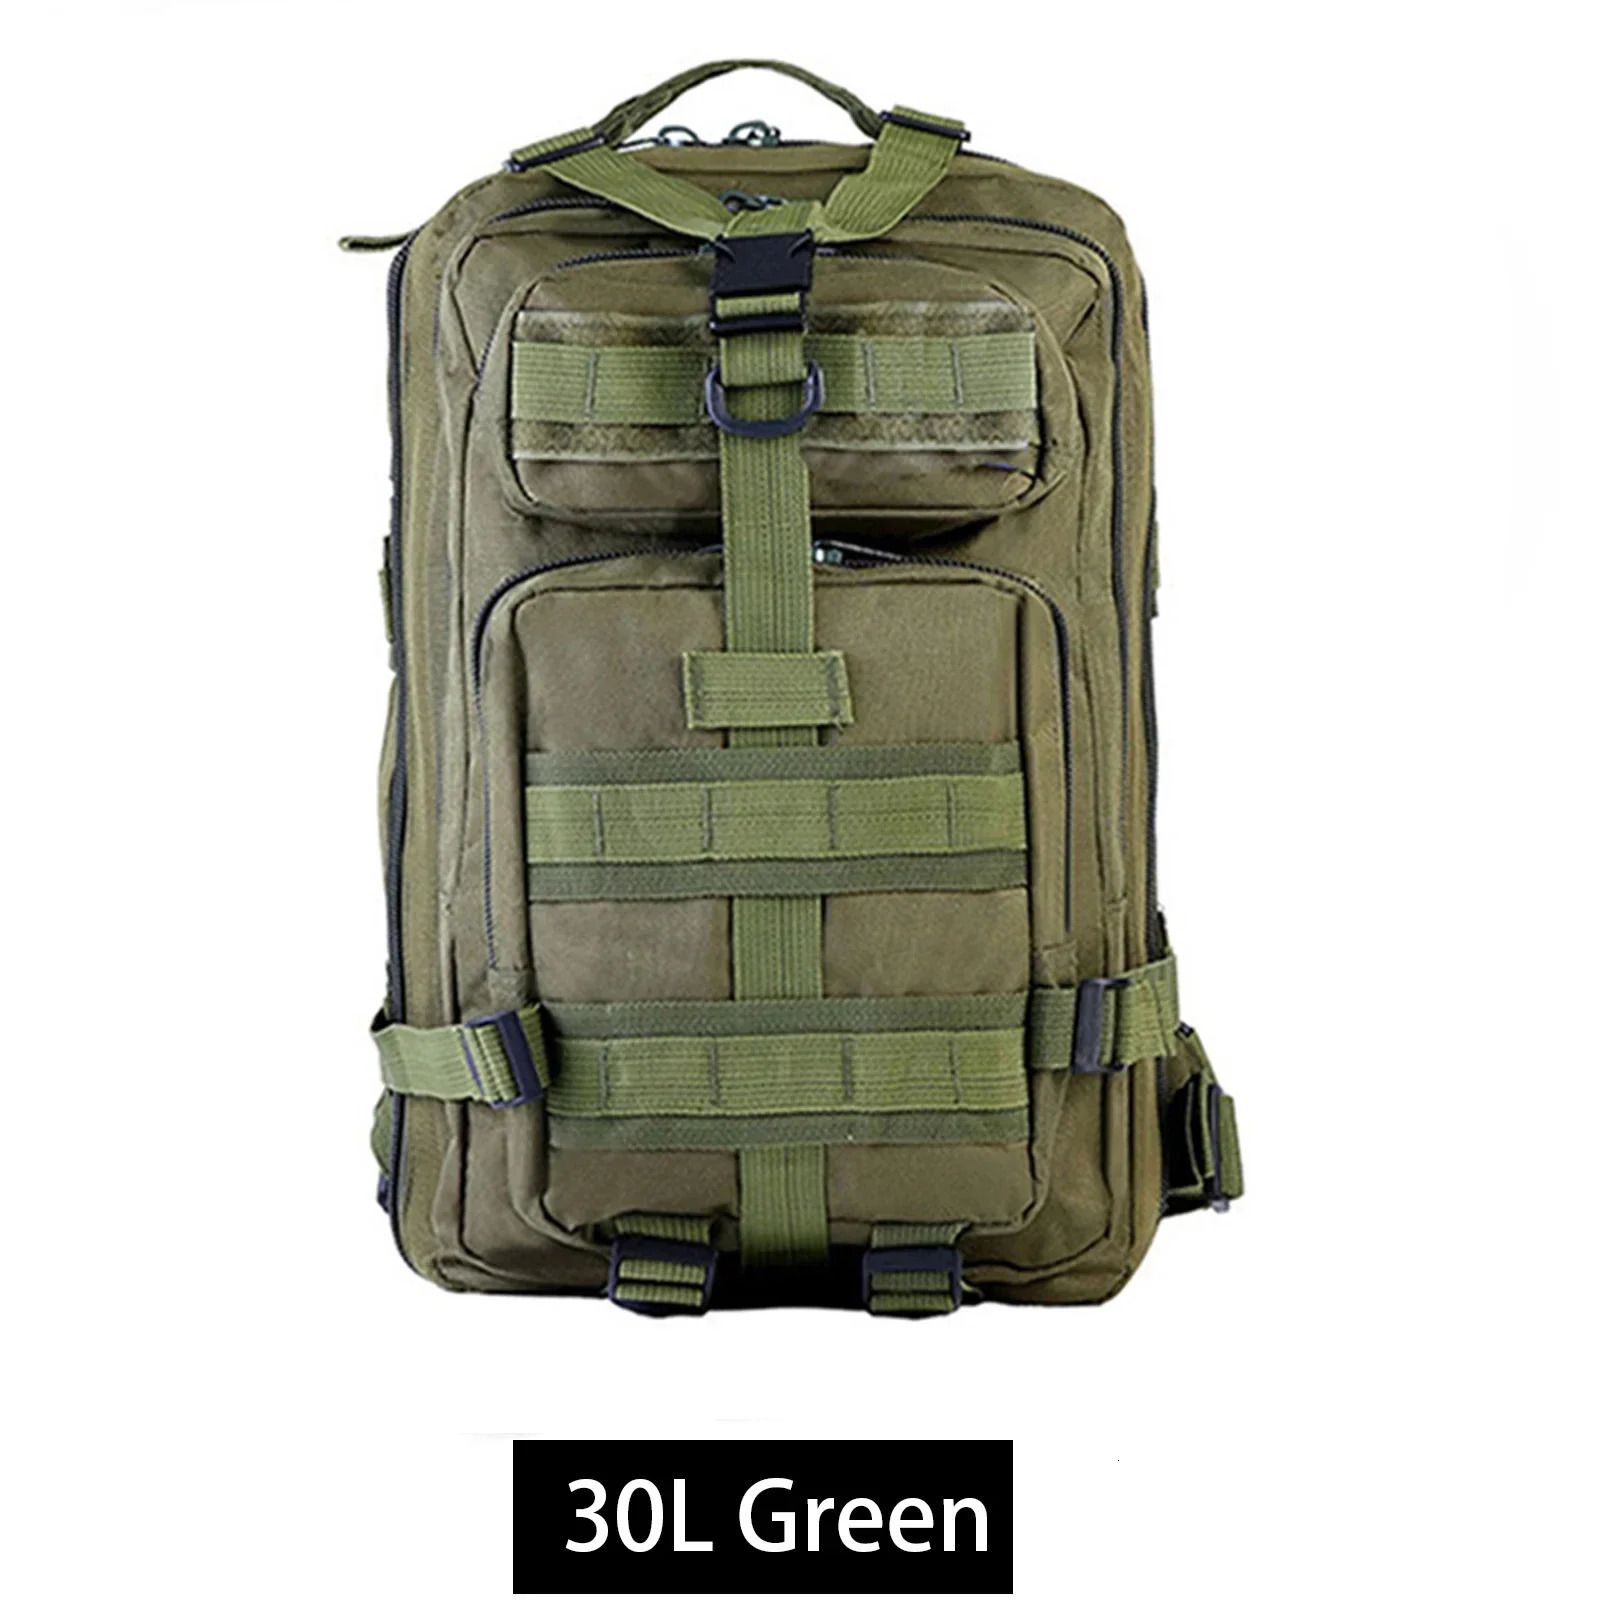 Grön 30L